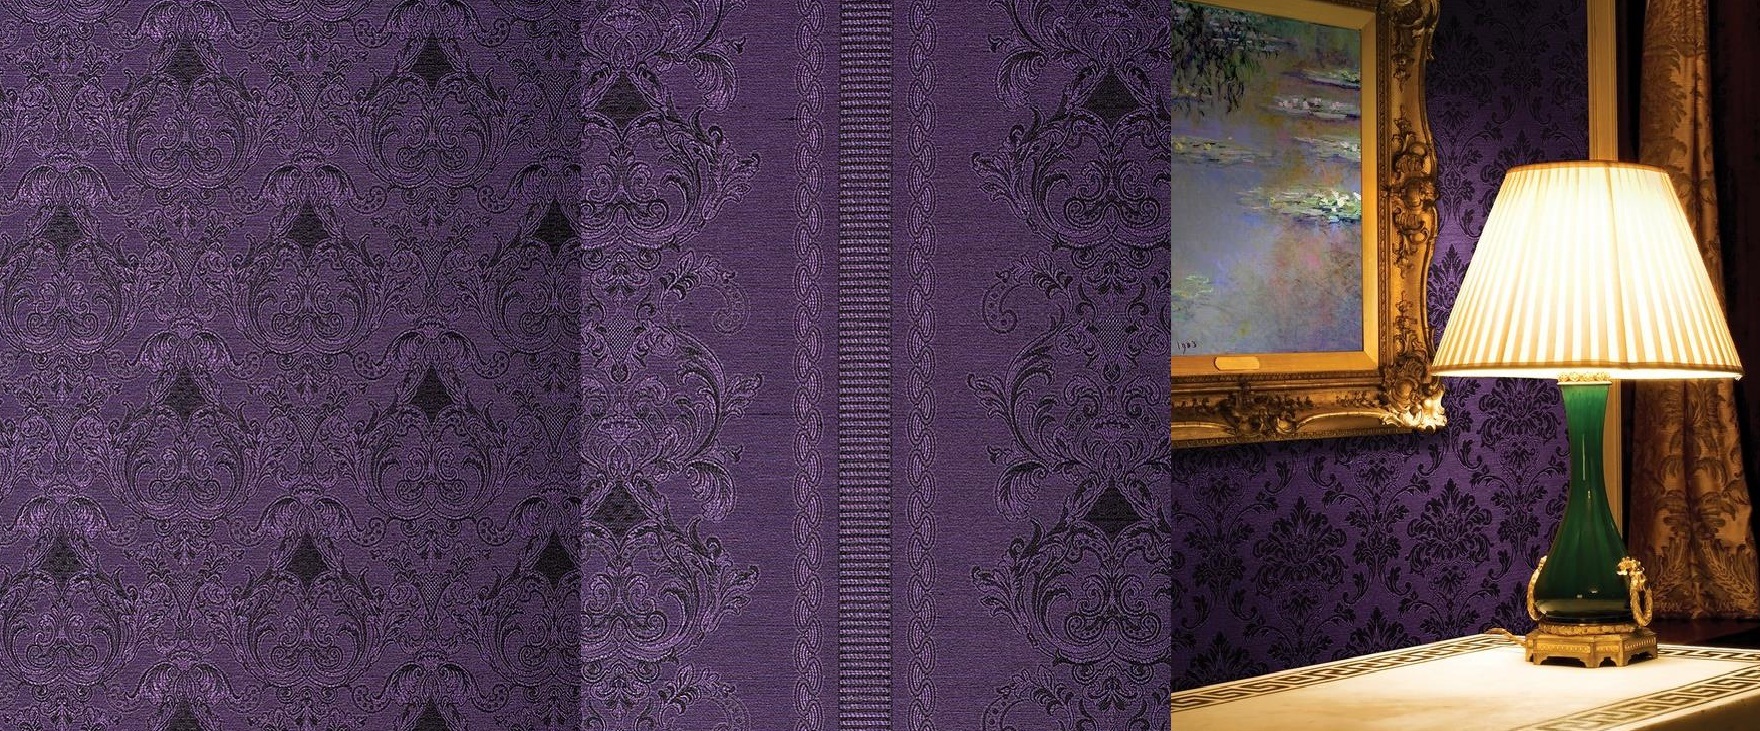 обои фиолетовые для стен